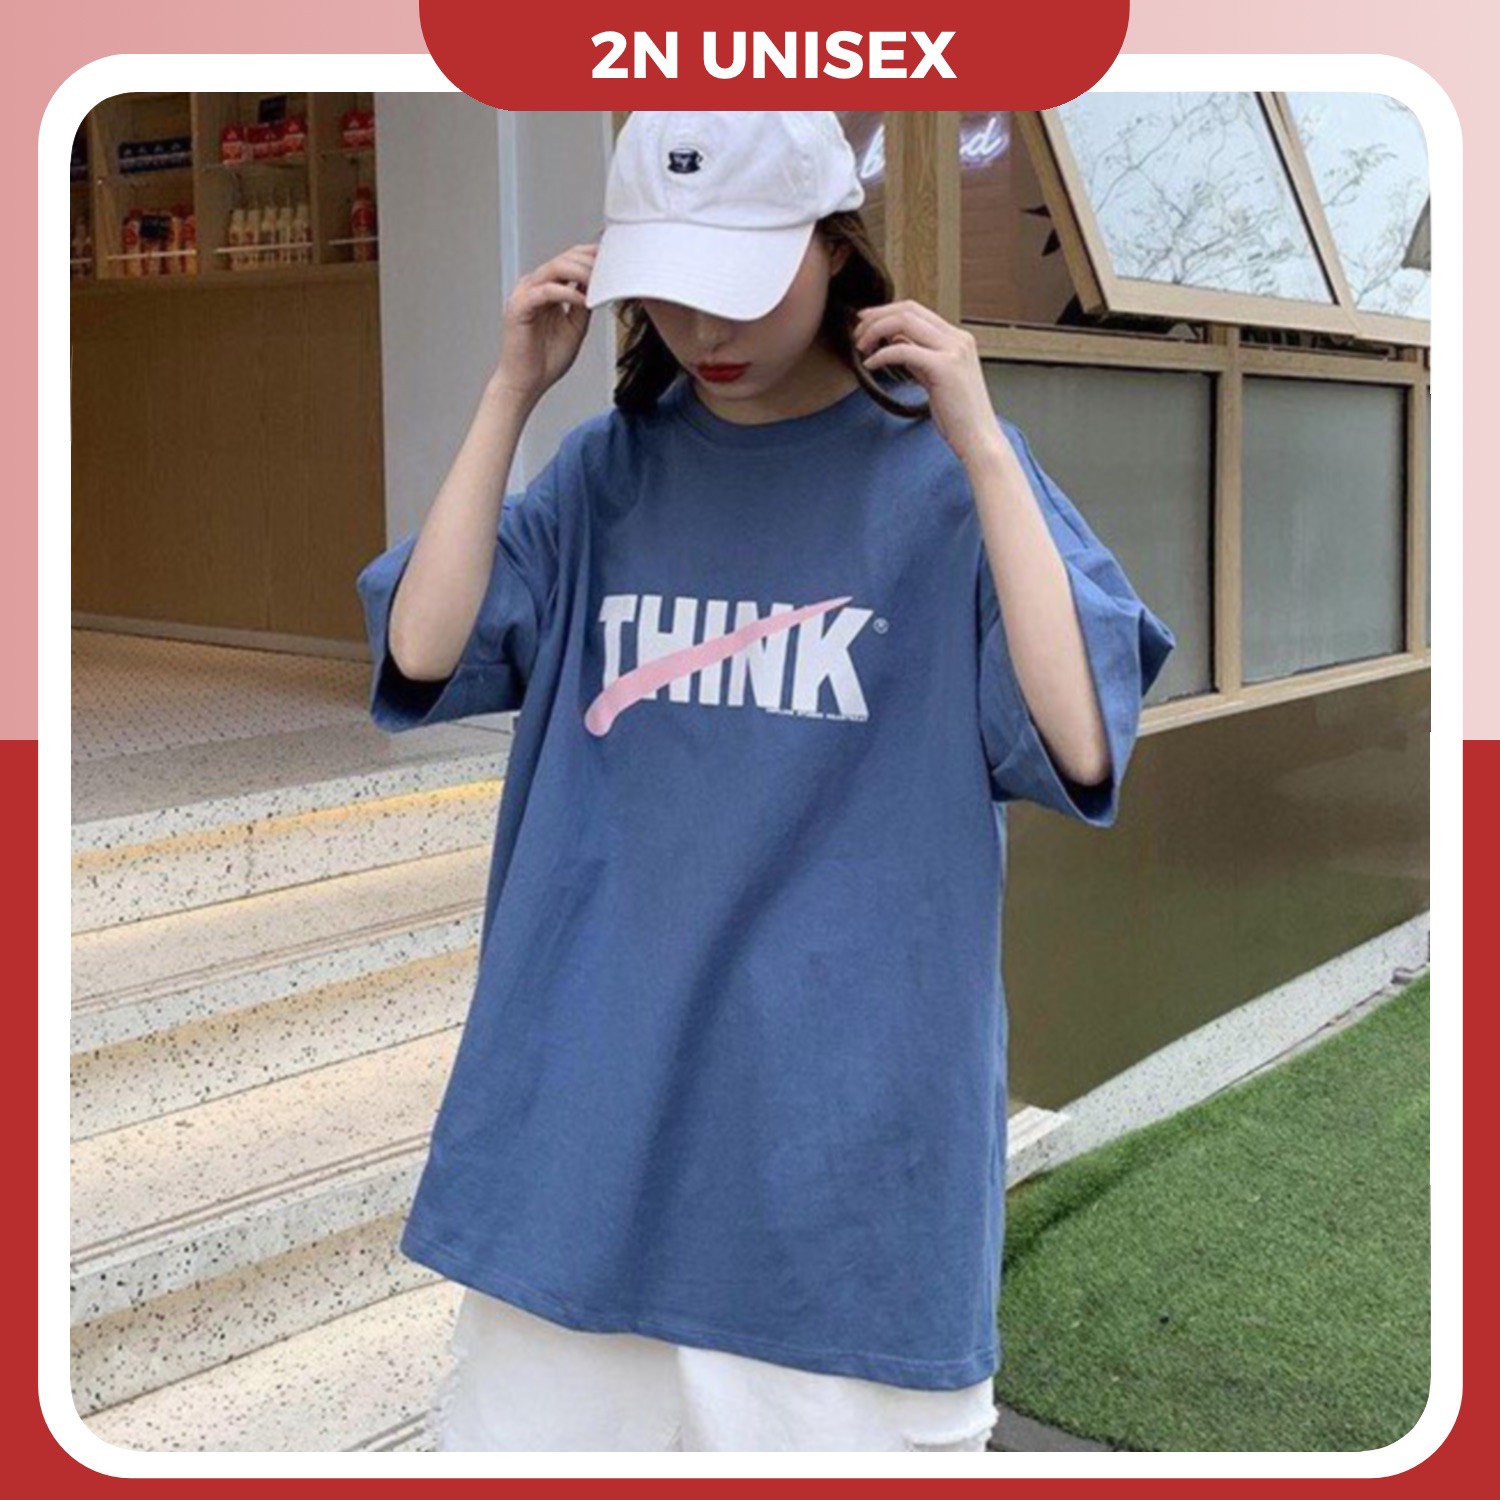 Áo thun tay lỡ form rộng - phông nam nữ cotton oversize - T shirt Think - 2N Unisex